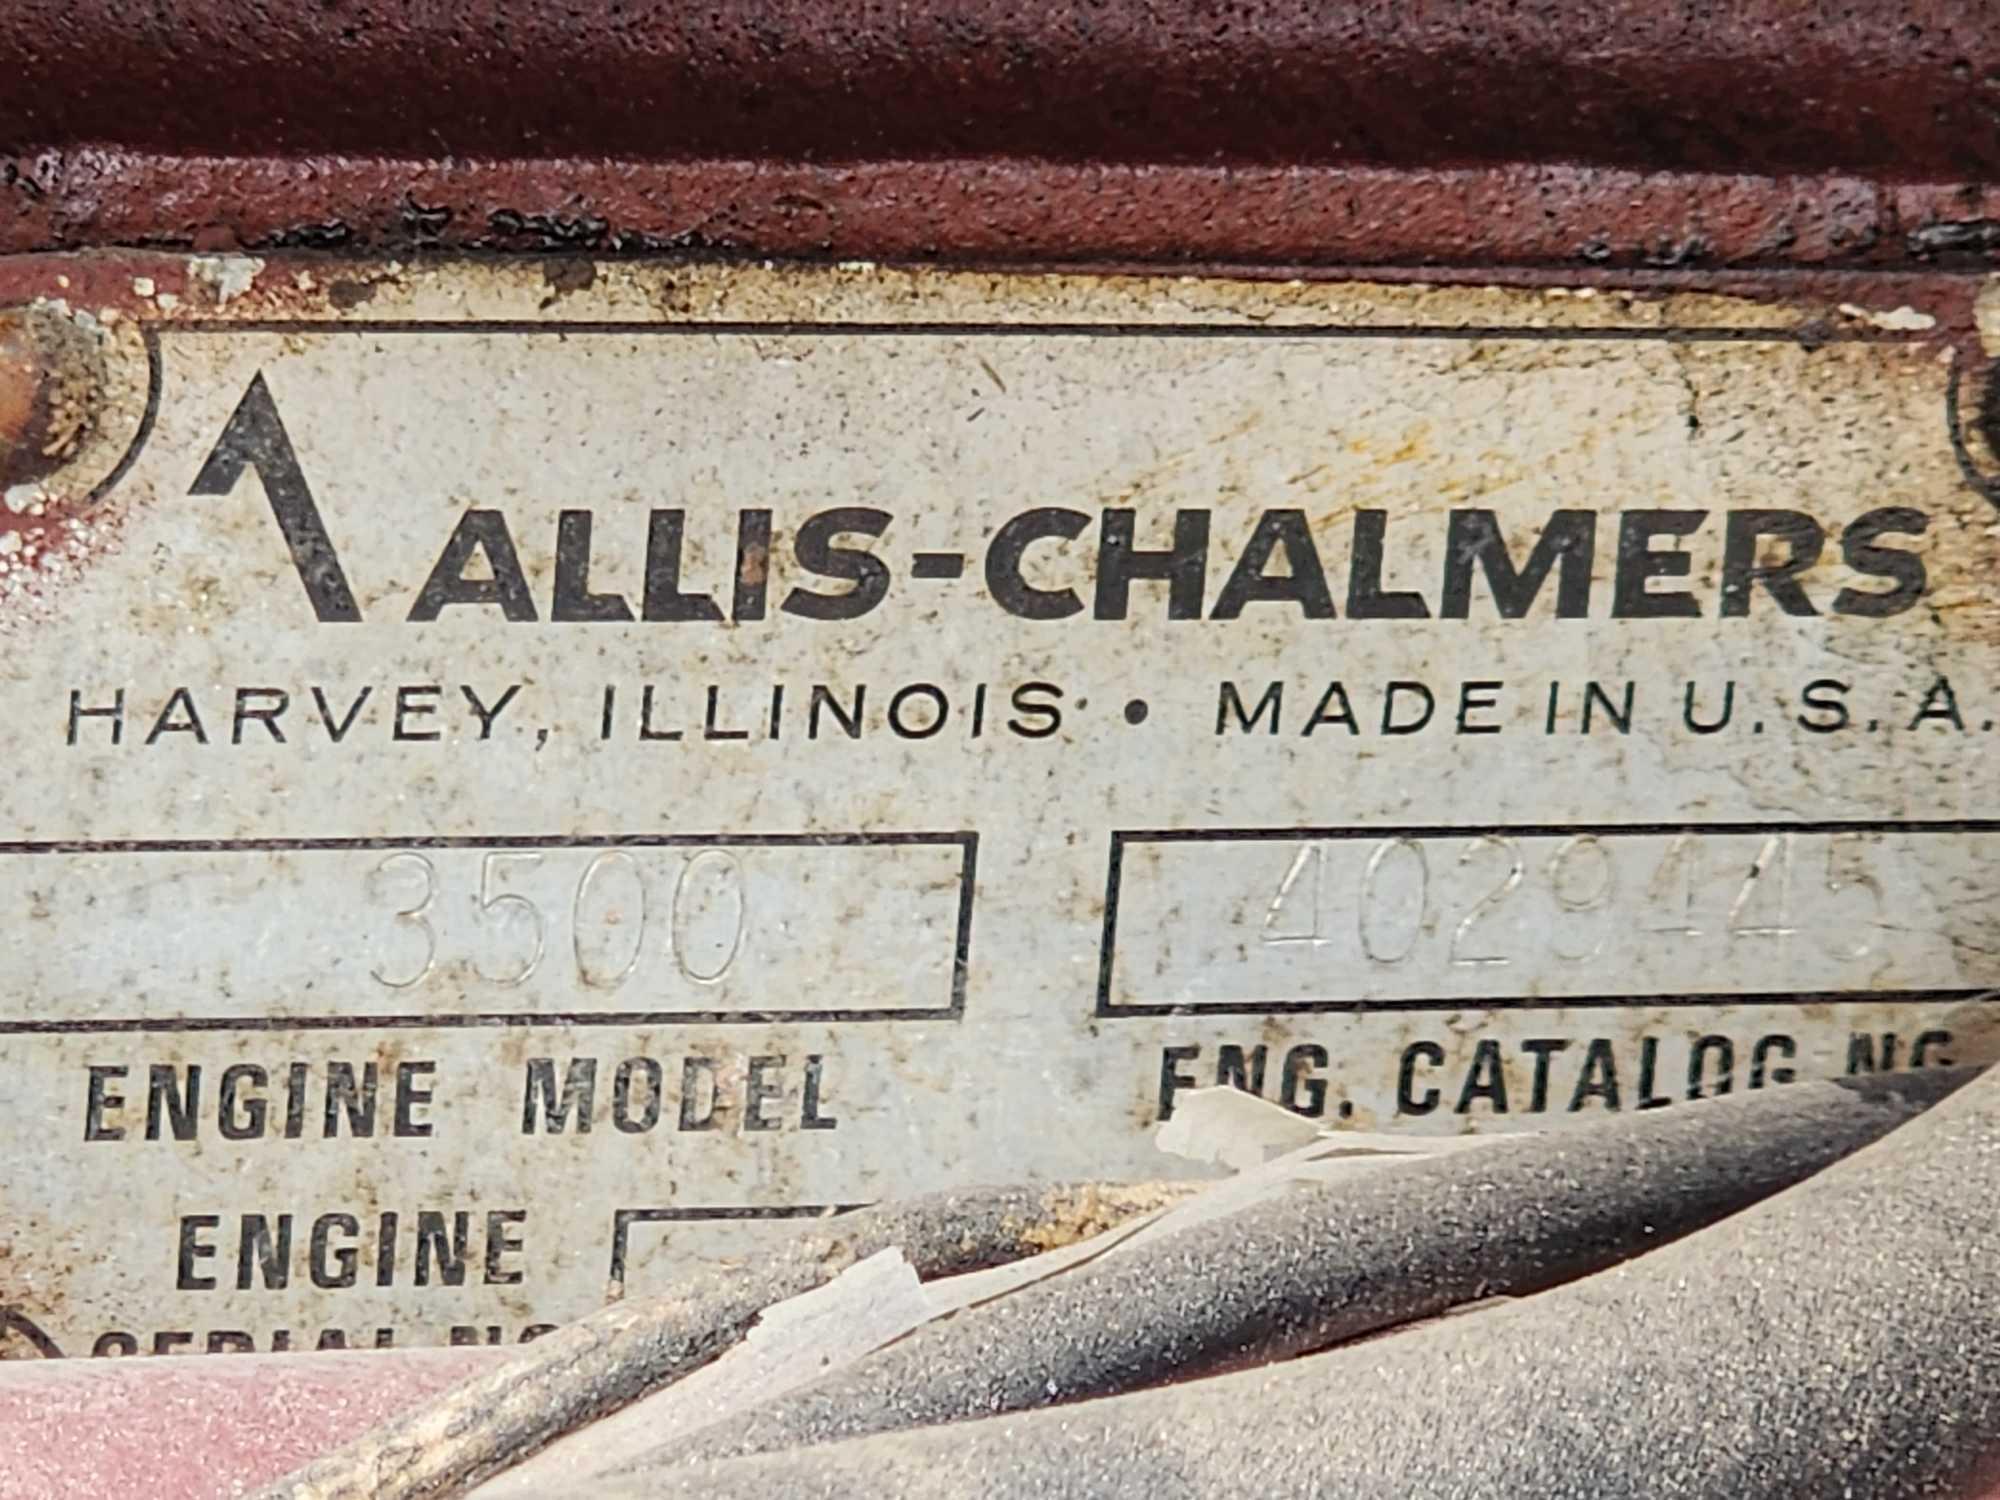 Allis Chalmers A-C 7030 Farm Tractor w/ Cab